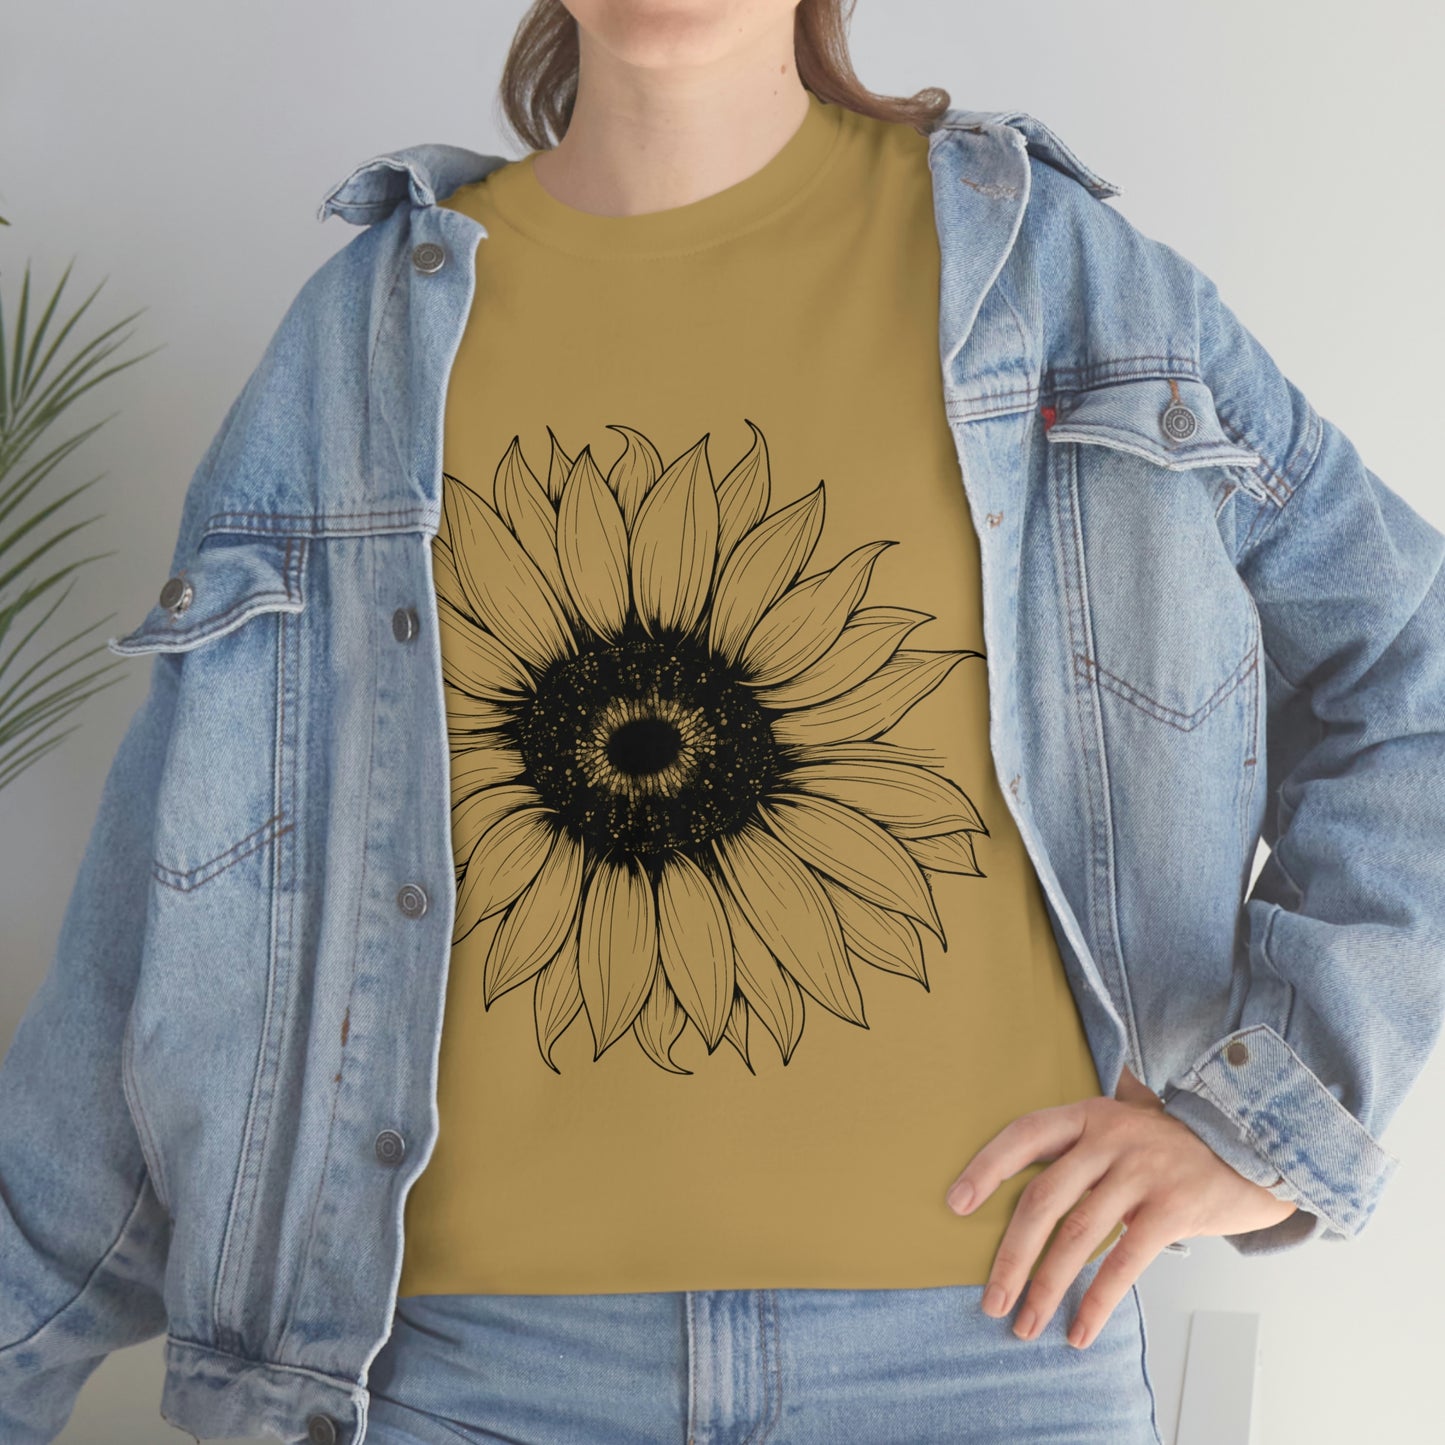 Sunflower, Sunflower Tshirt, Floral Tee Shirt,Sunflower Shirt,Flower Shirt,Garden Shirt, Womens Fall Shirt,Sunflower Shirts, Sunshine Tee